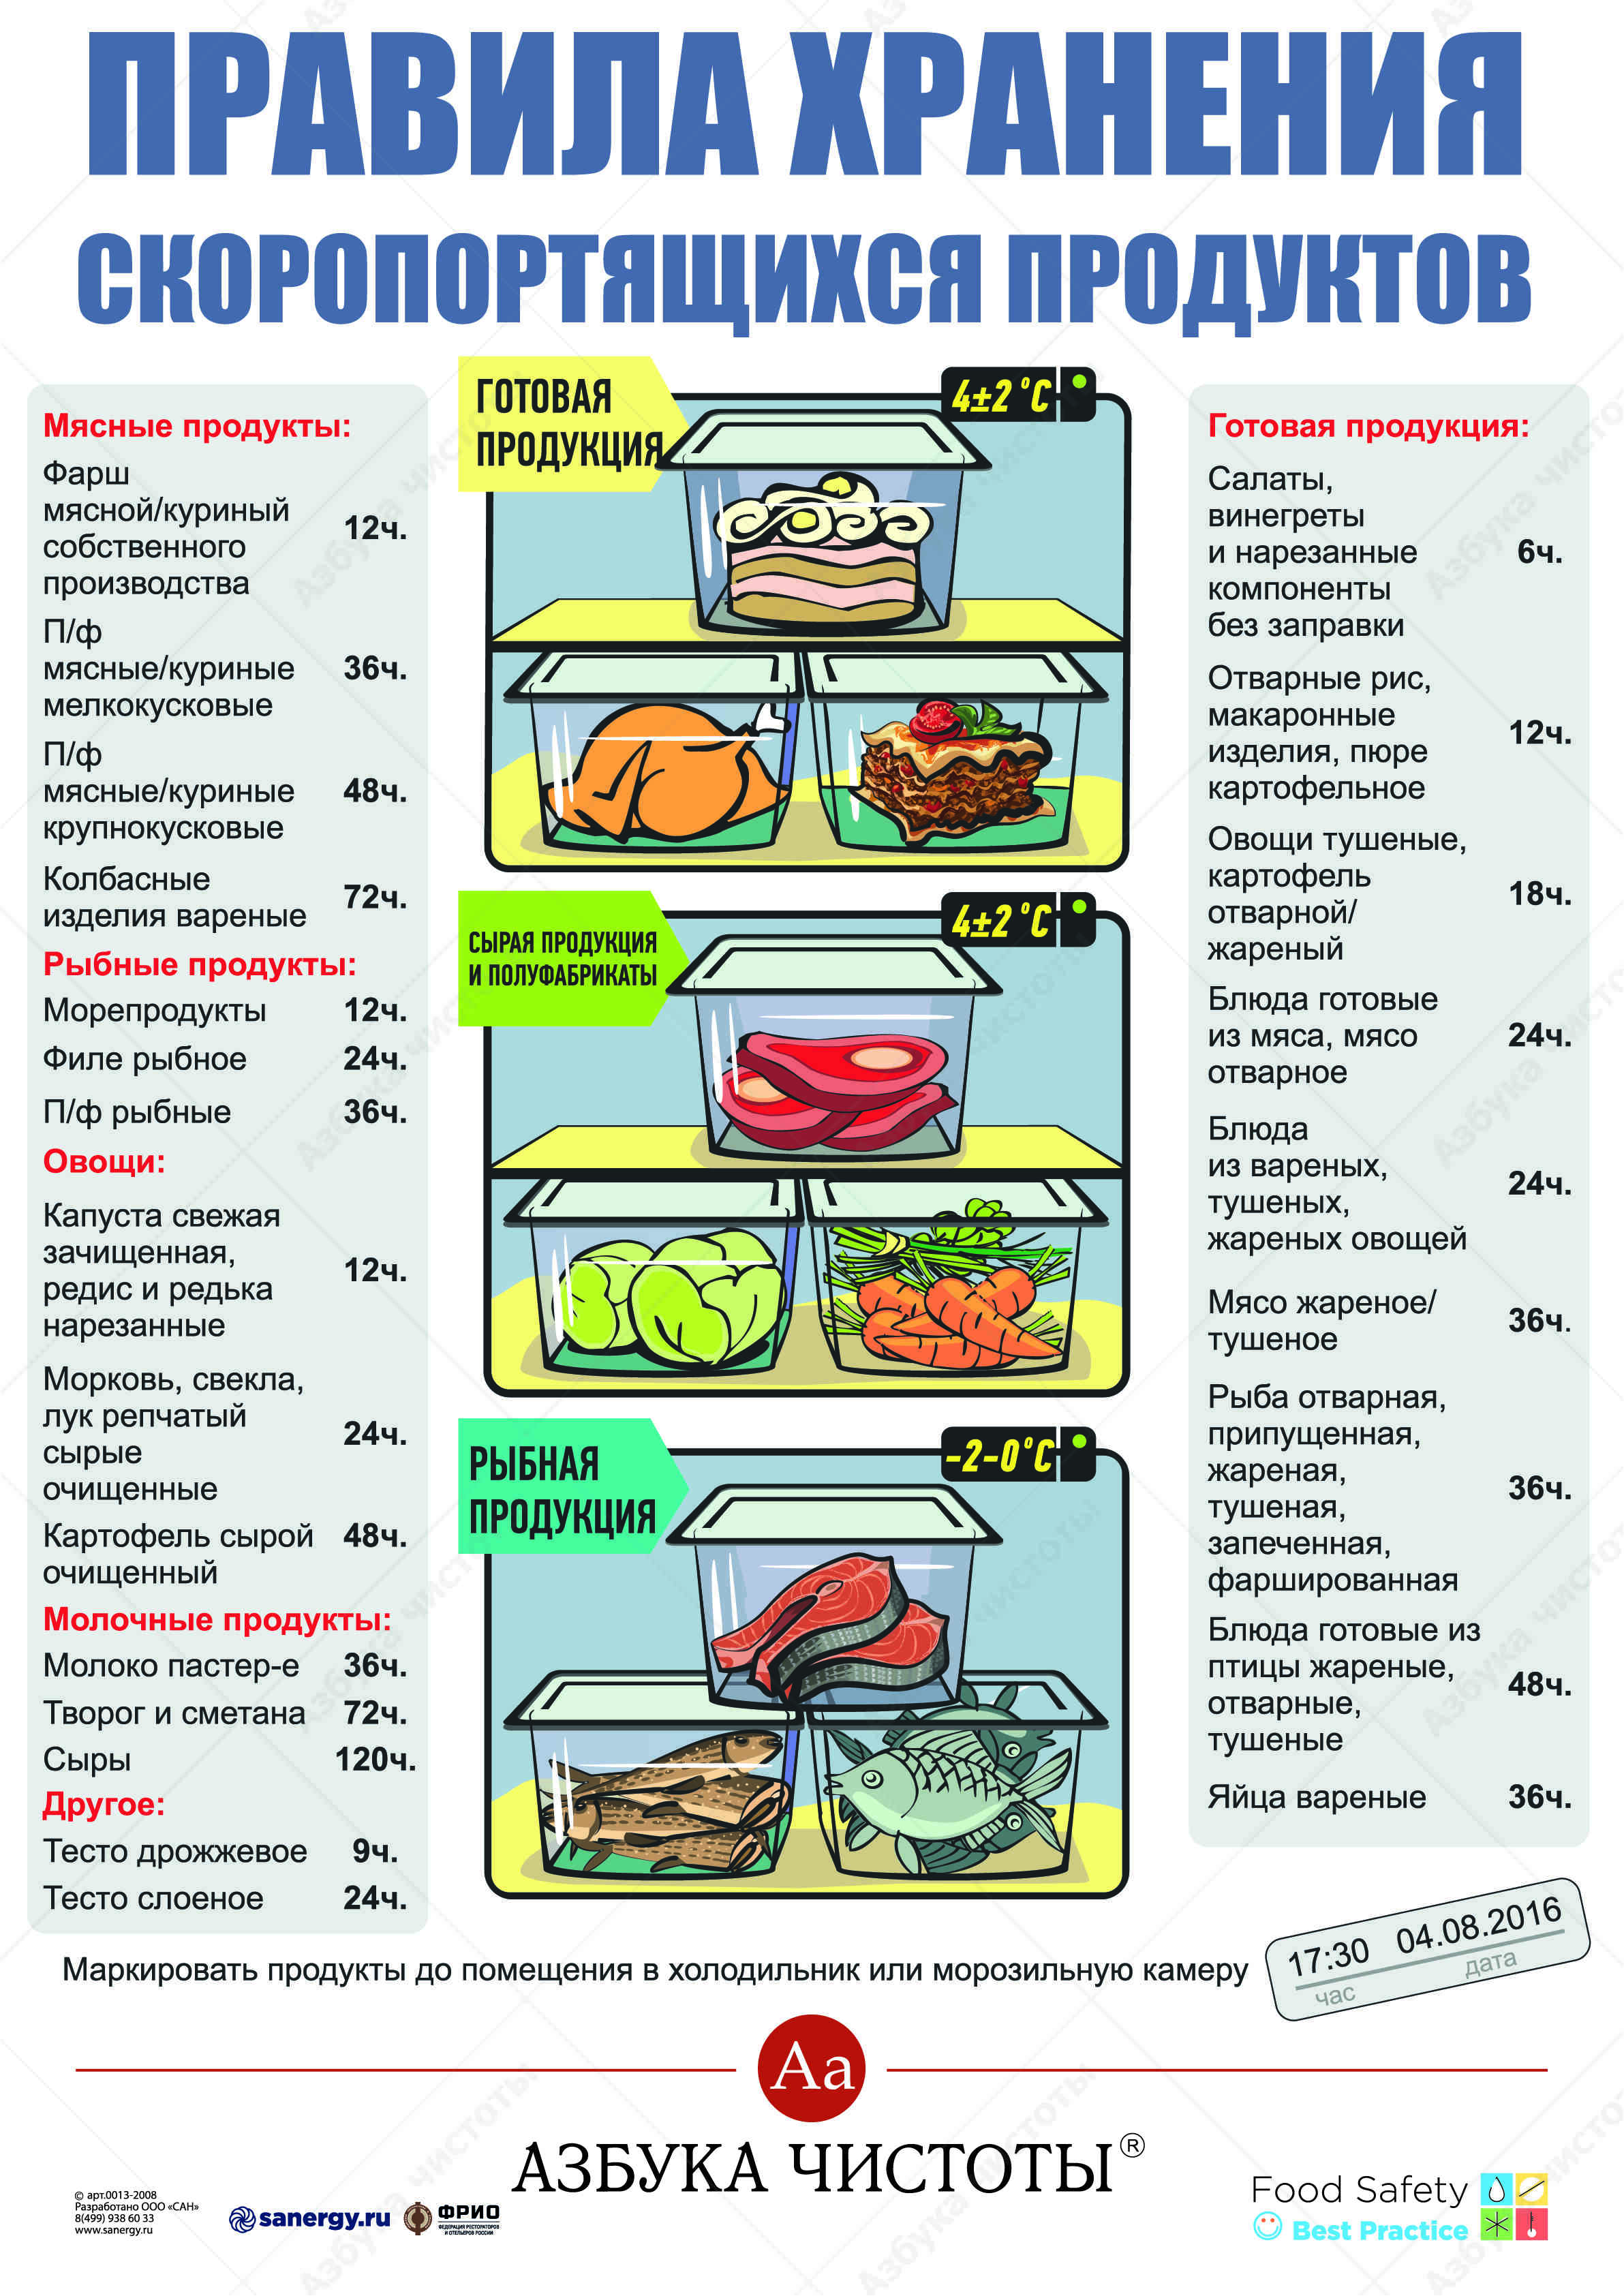 Порядок хранения пищевых продуктов